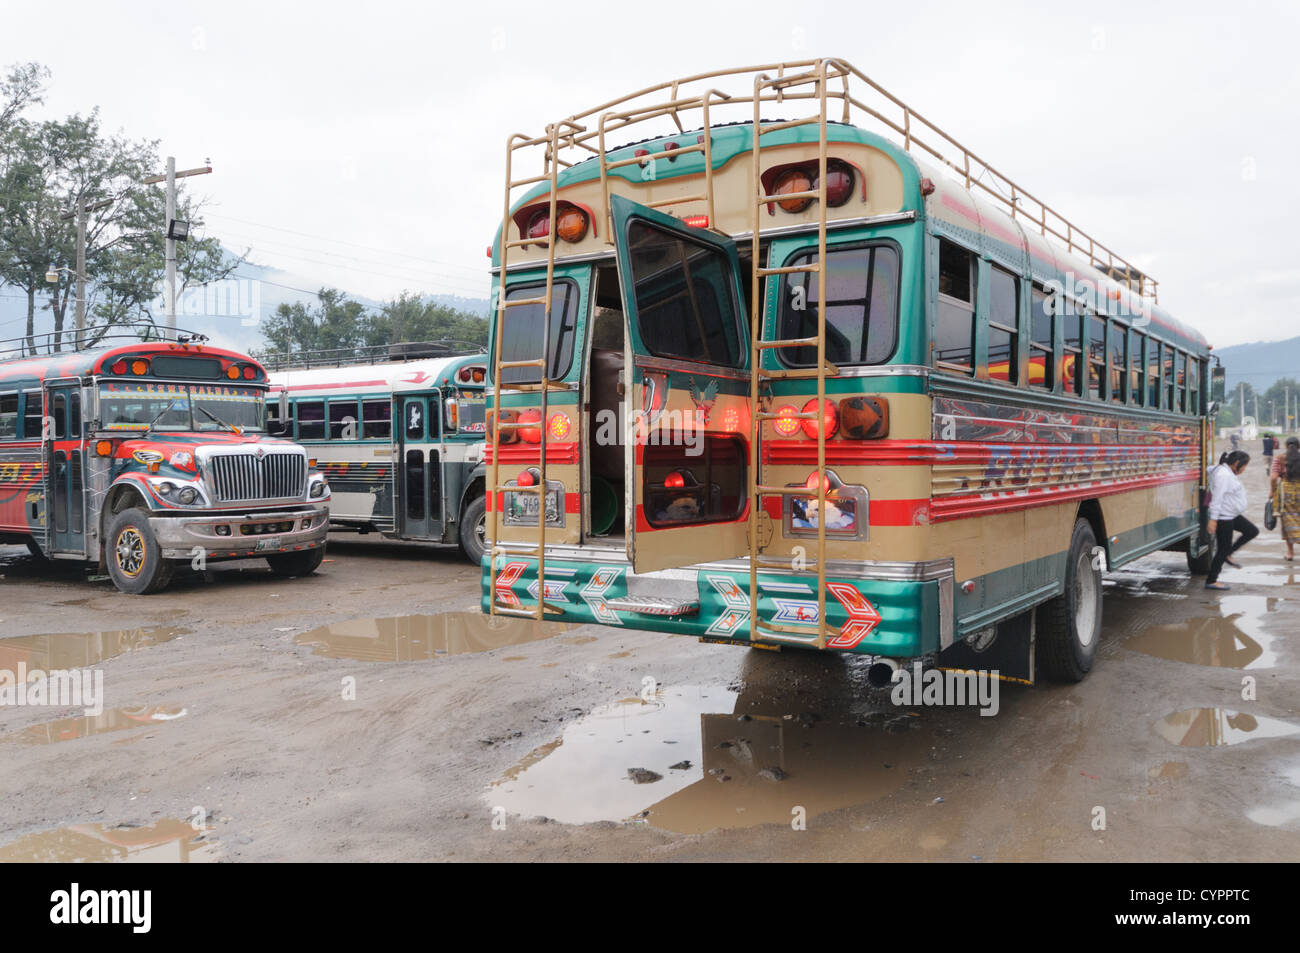 Laden Huhn Busse hinter dem Mercado Municipal (Stadtmarkt) in Antigua, Guatemala. Aus diesem umfangreichen zentralen Busbahnhof strahlenförmig der Routen in Guatemala. Oft bunt bemalt, die Huhn-Busse sind nachgerüsteten amerikanische Schulbusse und bieten ein günstiges Transportmittel im ganzen Land. Stockfoto